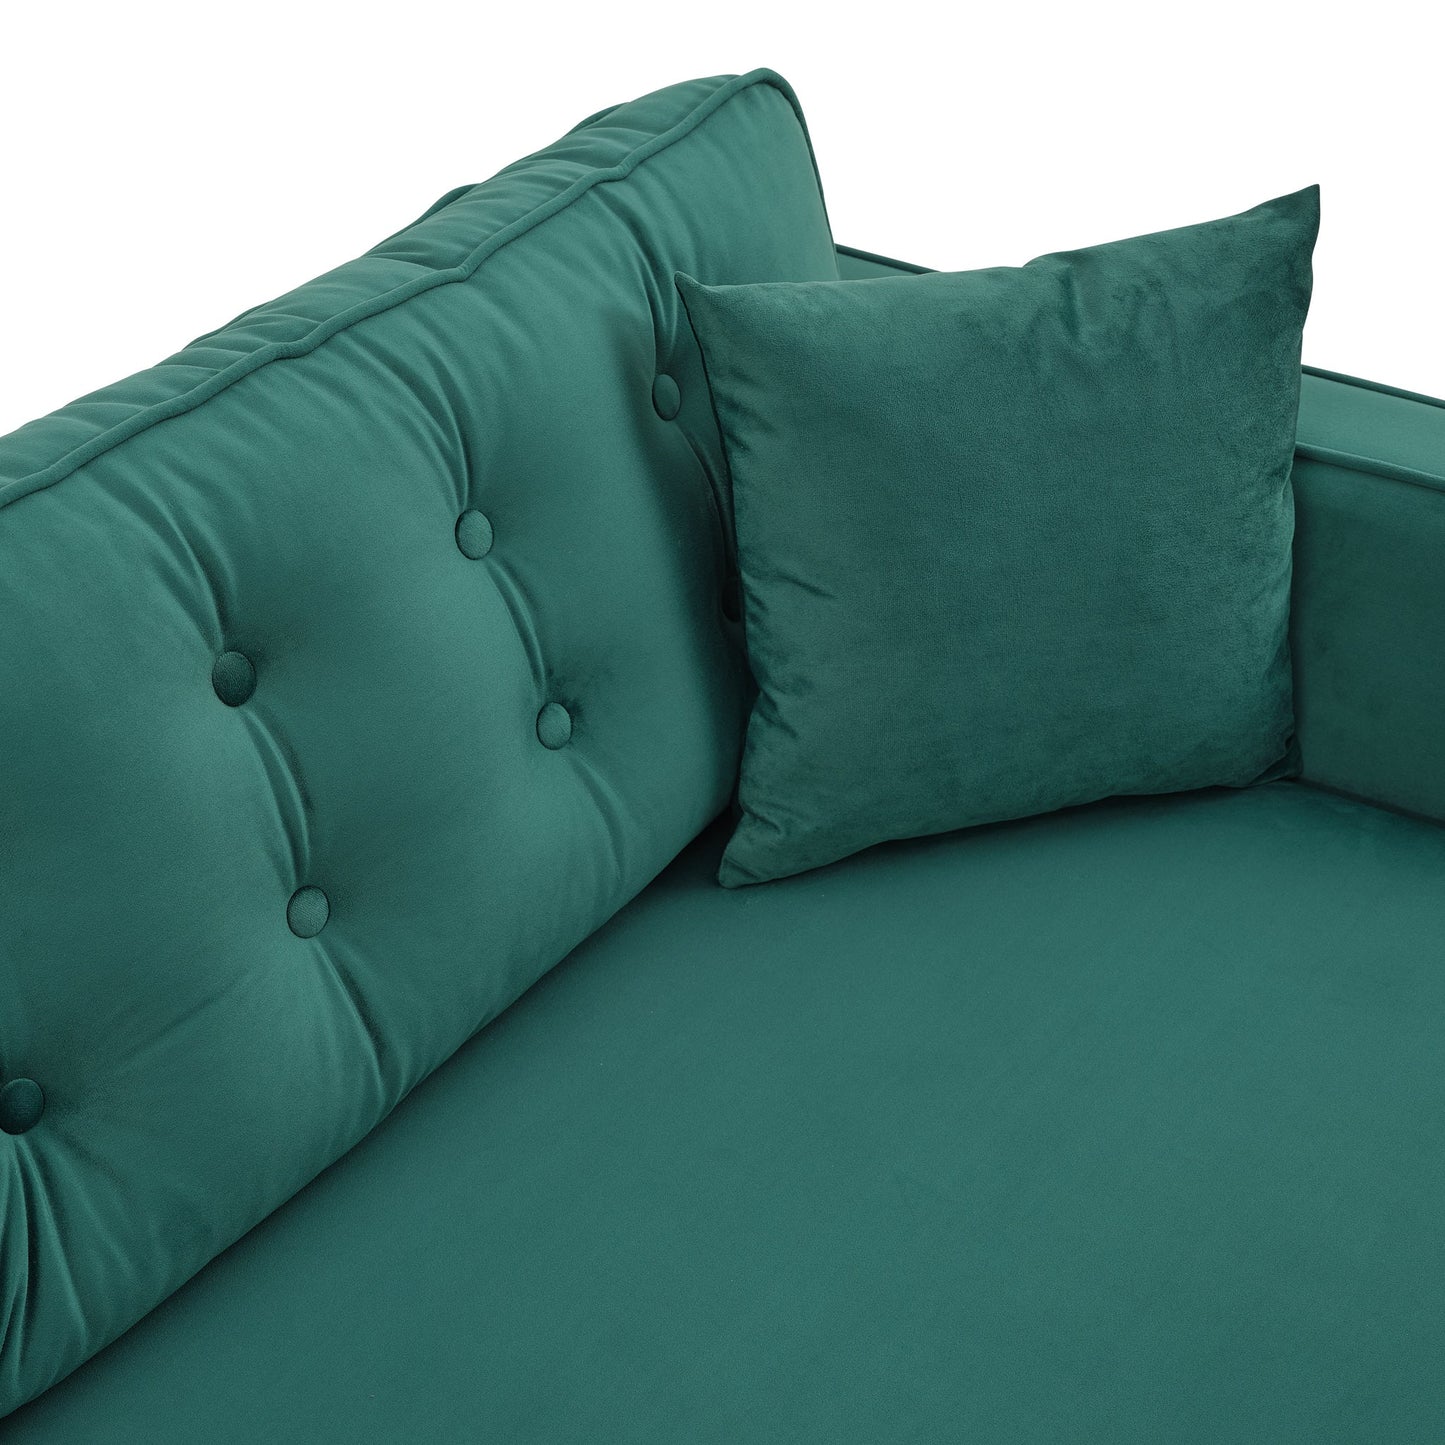 Oregon Sofa (Green Velvet)